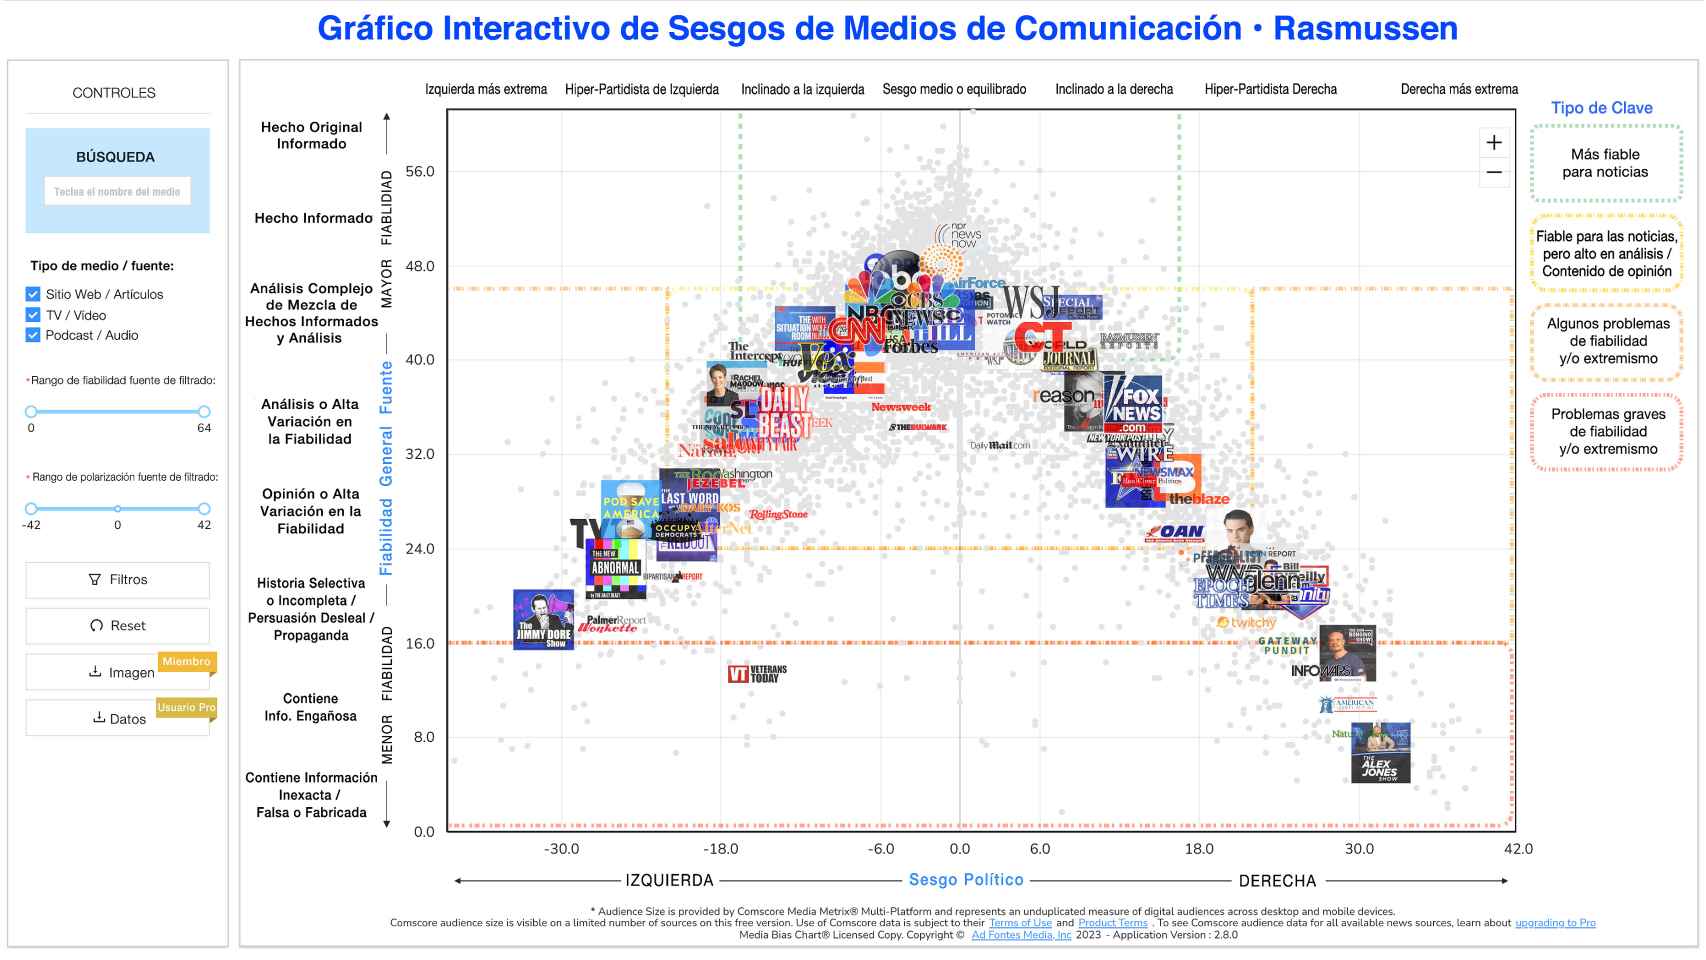 Gráfico de Sesgo Mediático de una aplicación interactiva algorítmica de Comscore, que muestra un posicionamiento de medios basado en datos con el que adaptar al usuario las noticias (y la publicidad) desde el punto de vista que le resulte más satisfactorio mediante filtros algorítmicos. Tiene niveles de 'miembro' y de usuario profesional.